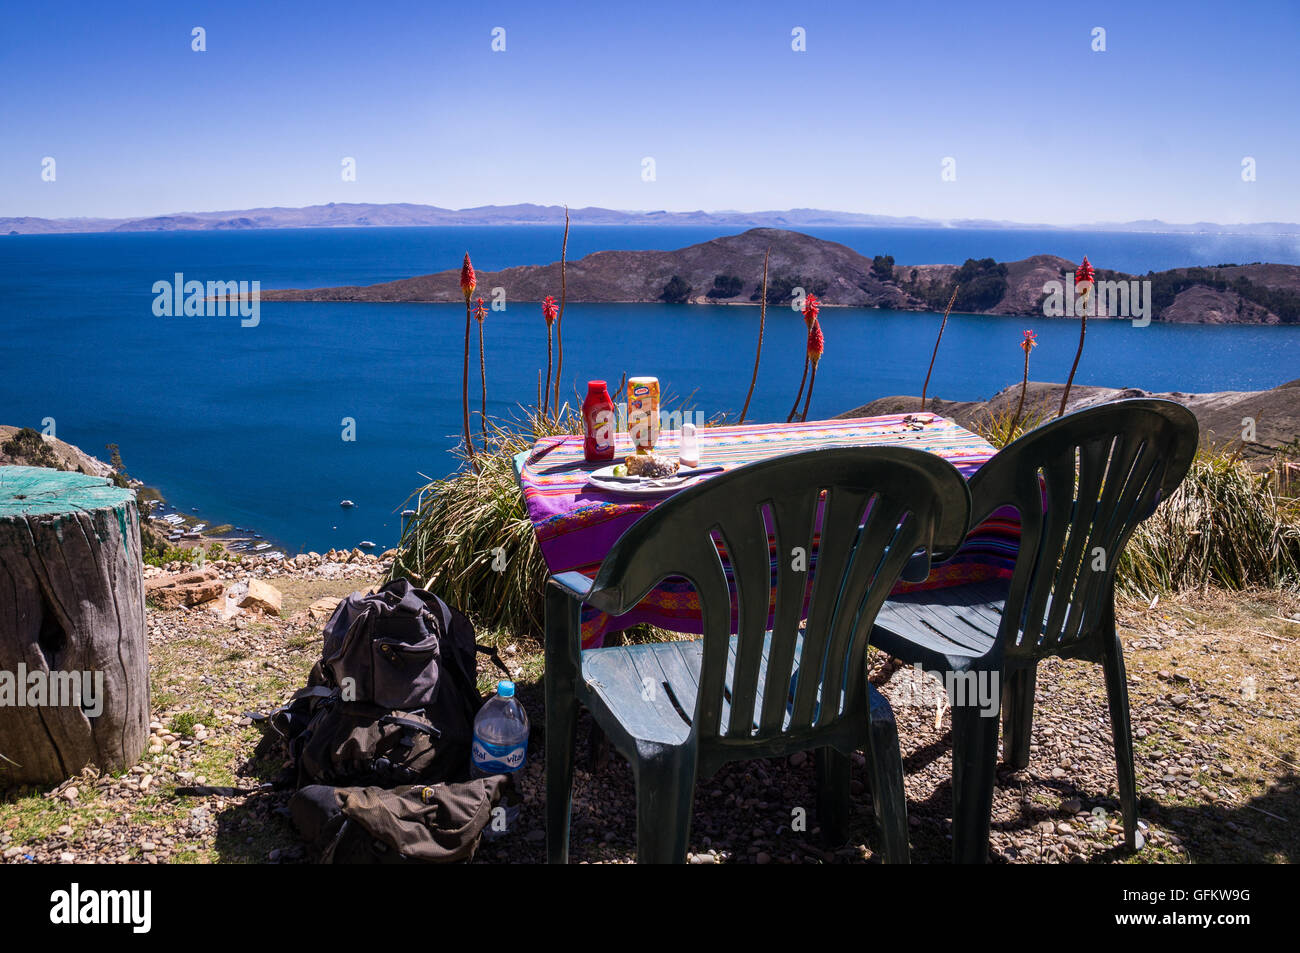 Il pranzo a Isla de Sol, Bolivia: Ristorante tavolo e sedia con vista sul lago Titicaca. Isla de Sol era un luogo sacro per i Foto Stock